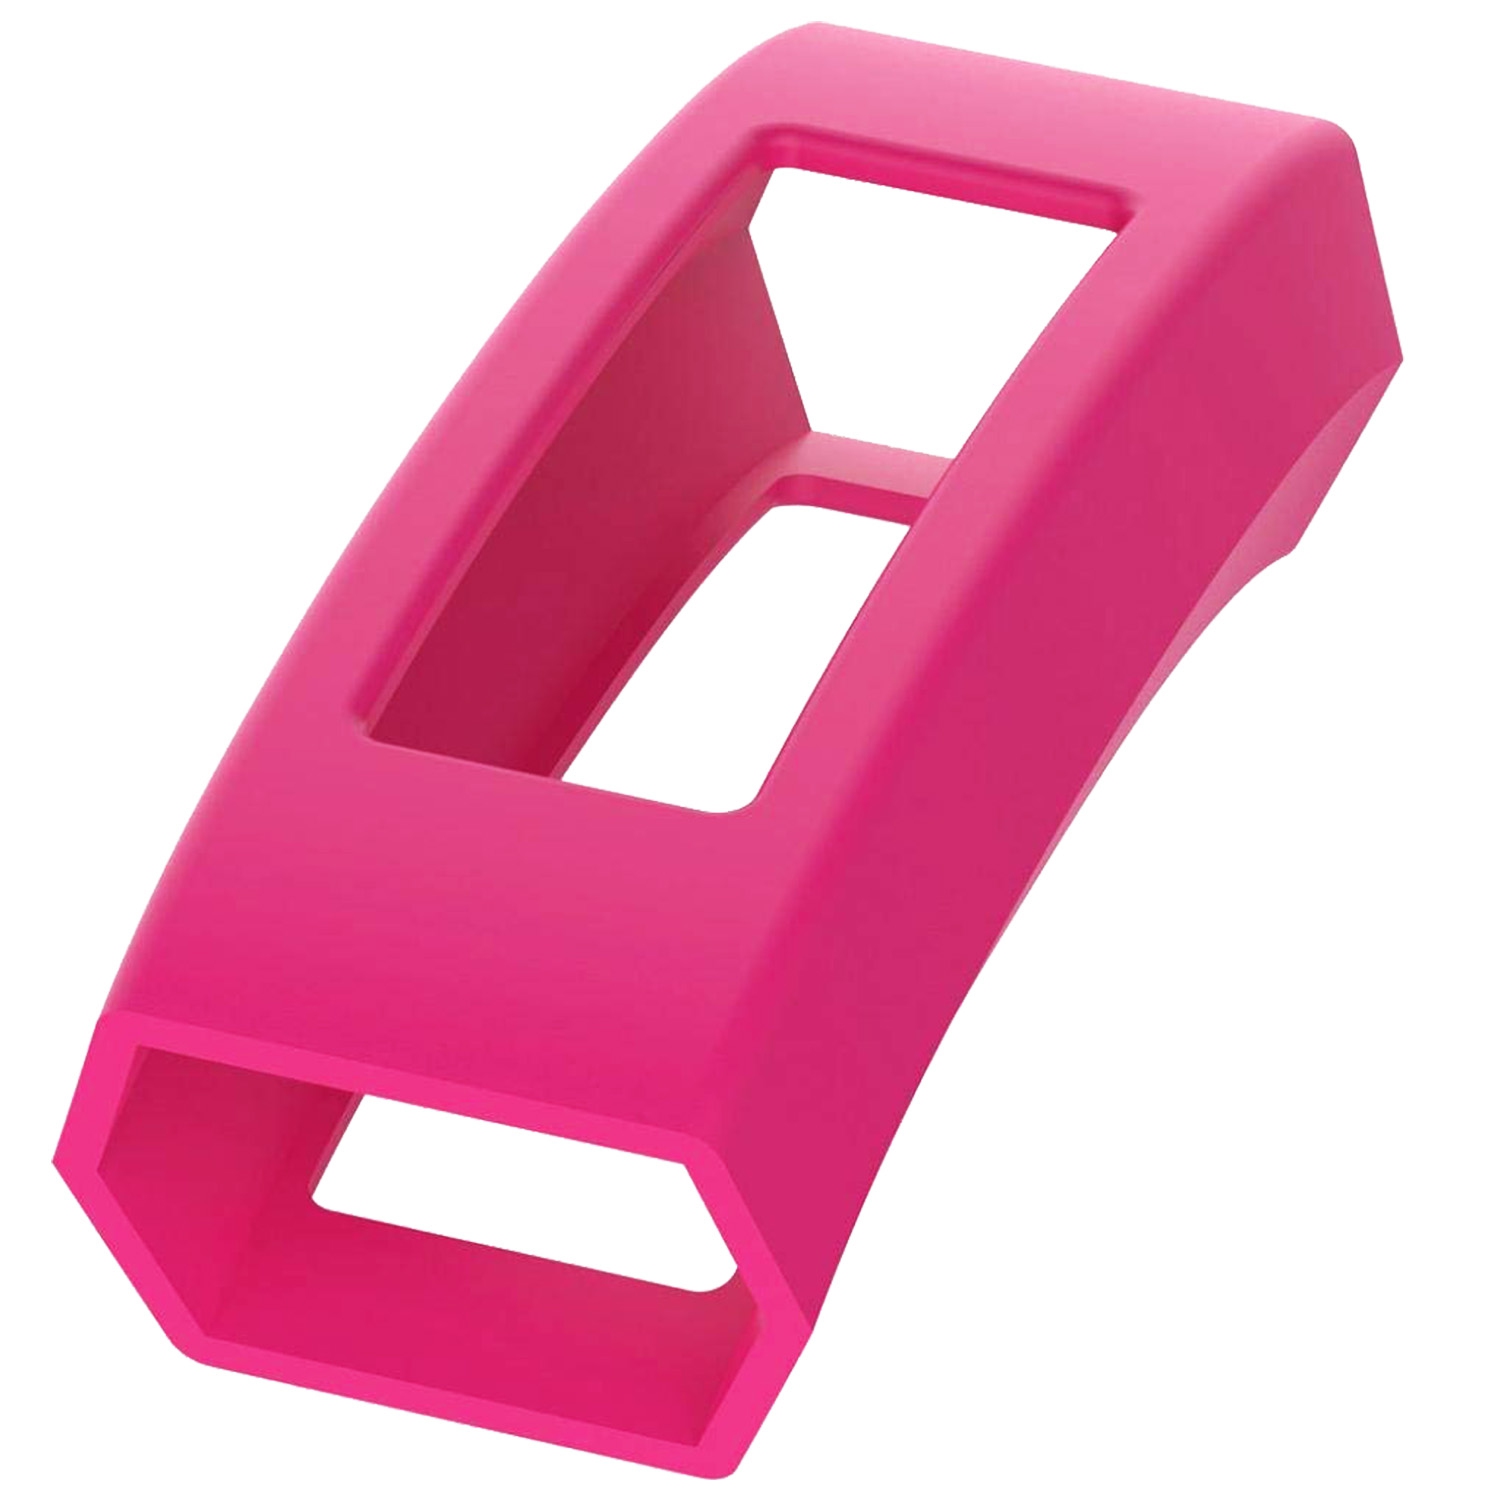 StrapsCo Silicone Rubber Protective Case Cover for Fitbit Alta & Alta HR - Magenta